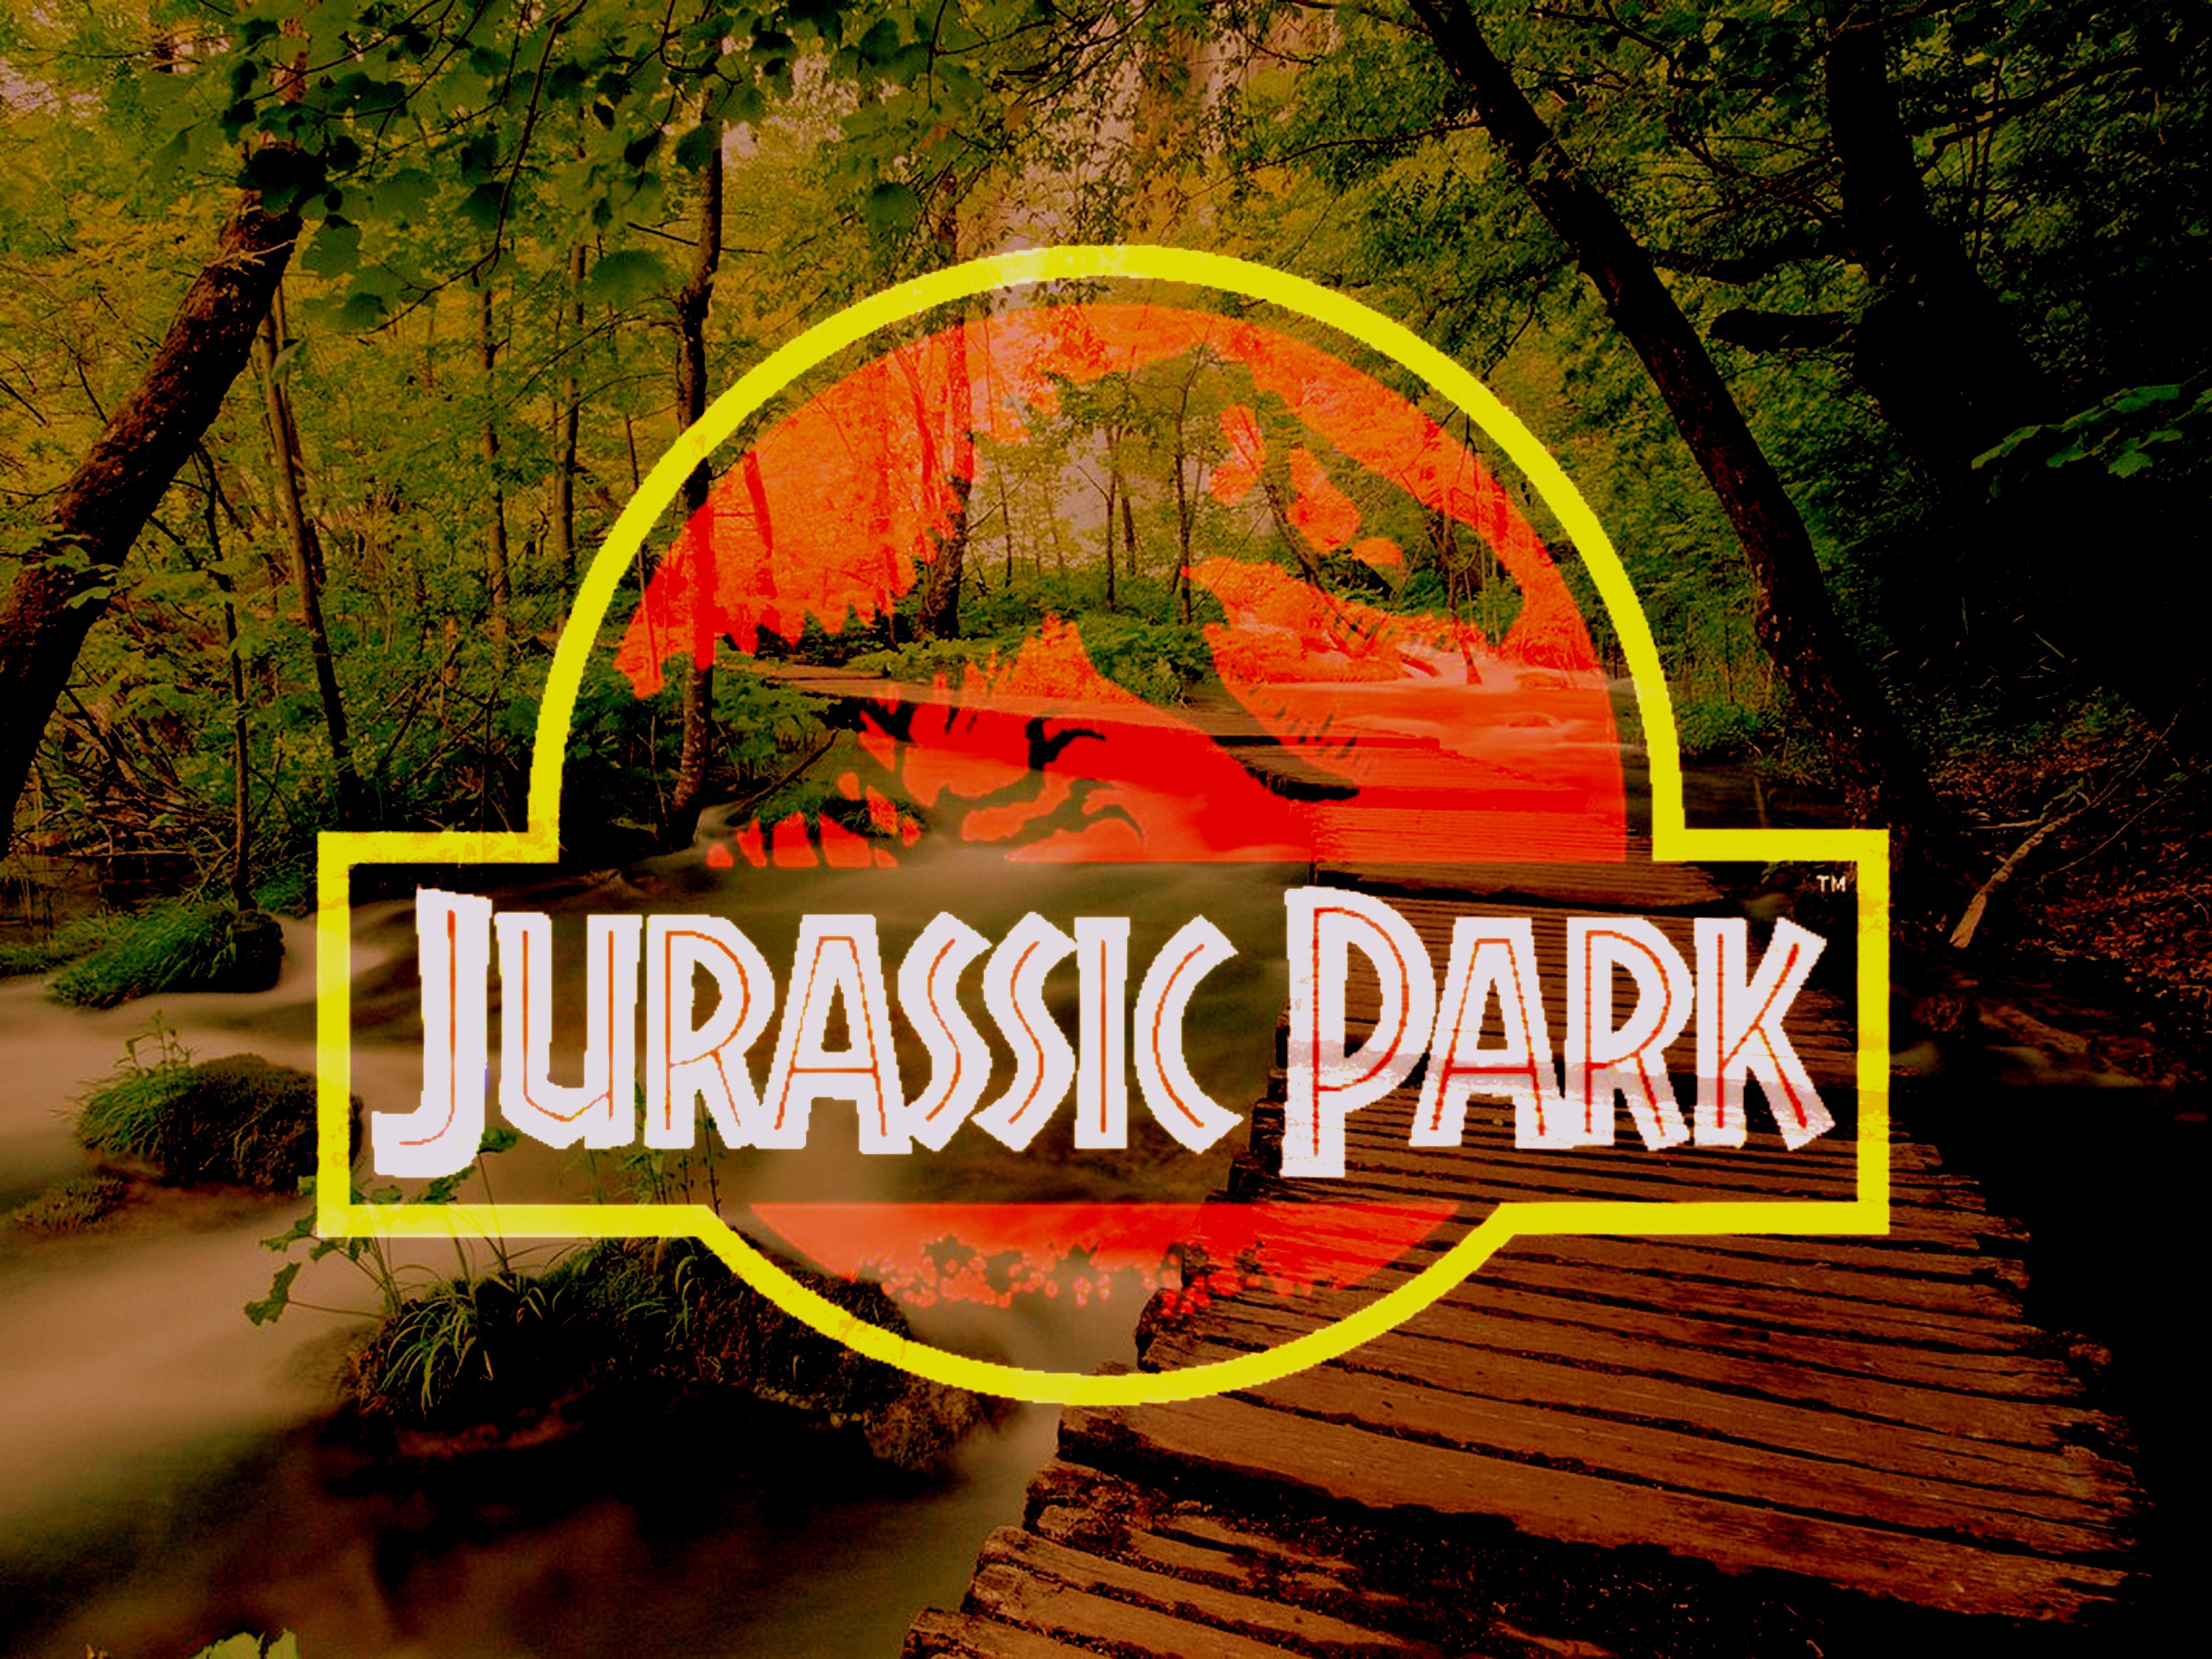 5120 x 3840 · jpeg - Jurassic Park Logo Backgrounds | PixelsTalk